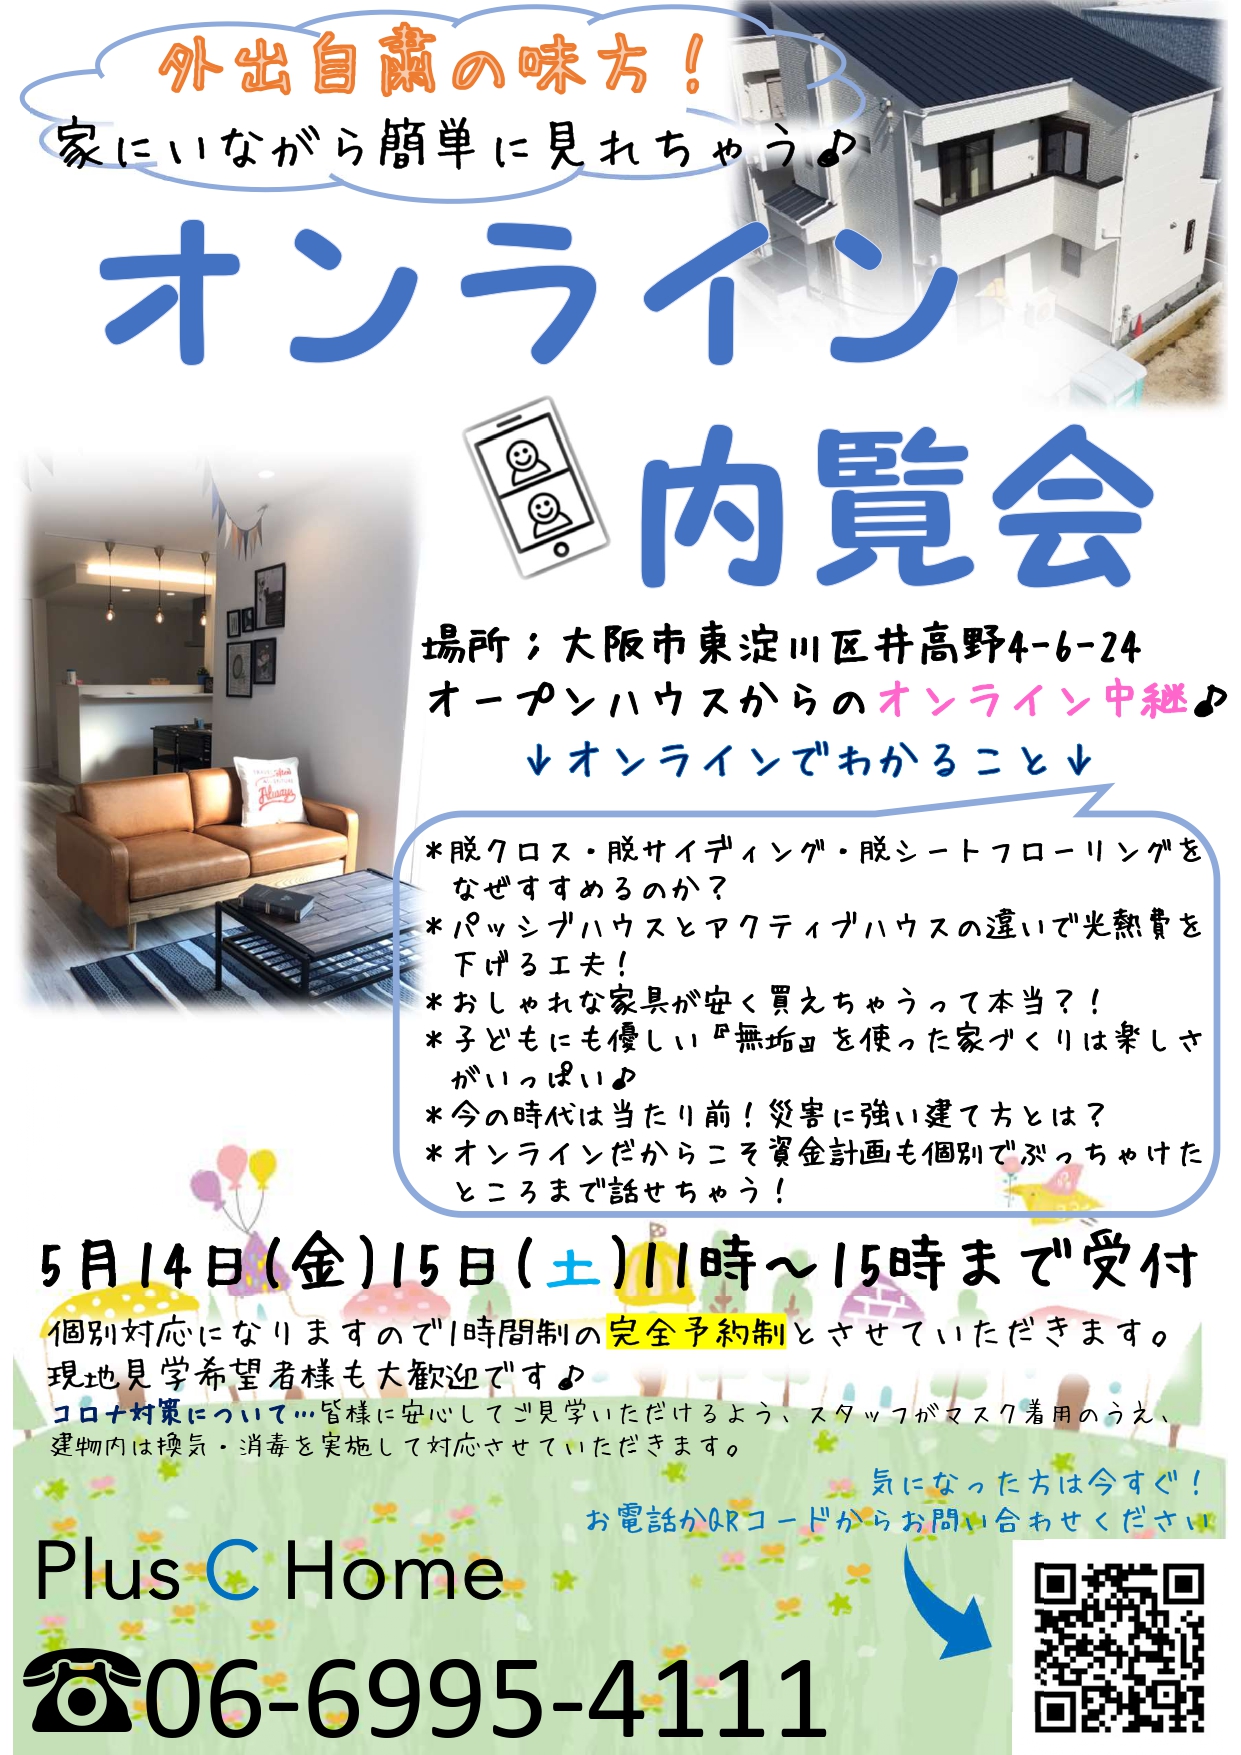 大阪注文住宅工務店Plus C Homeがプロデュースしたモデルハウスをオンラインで見よう♪